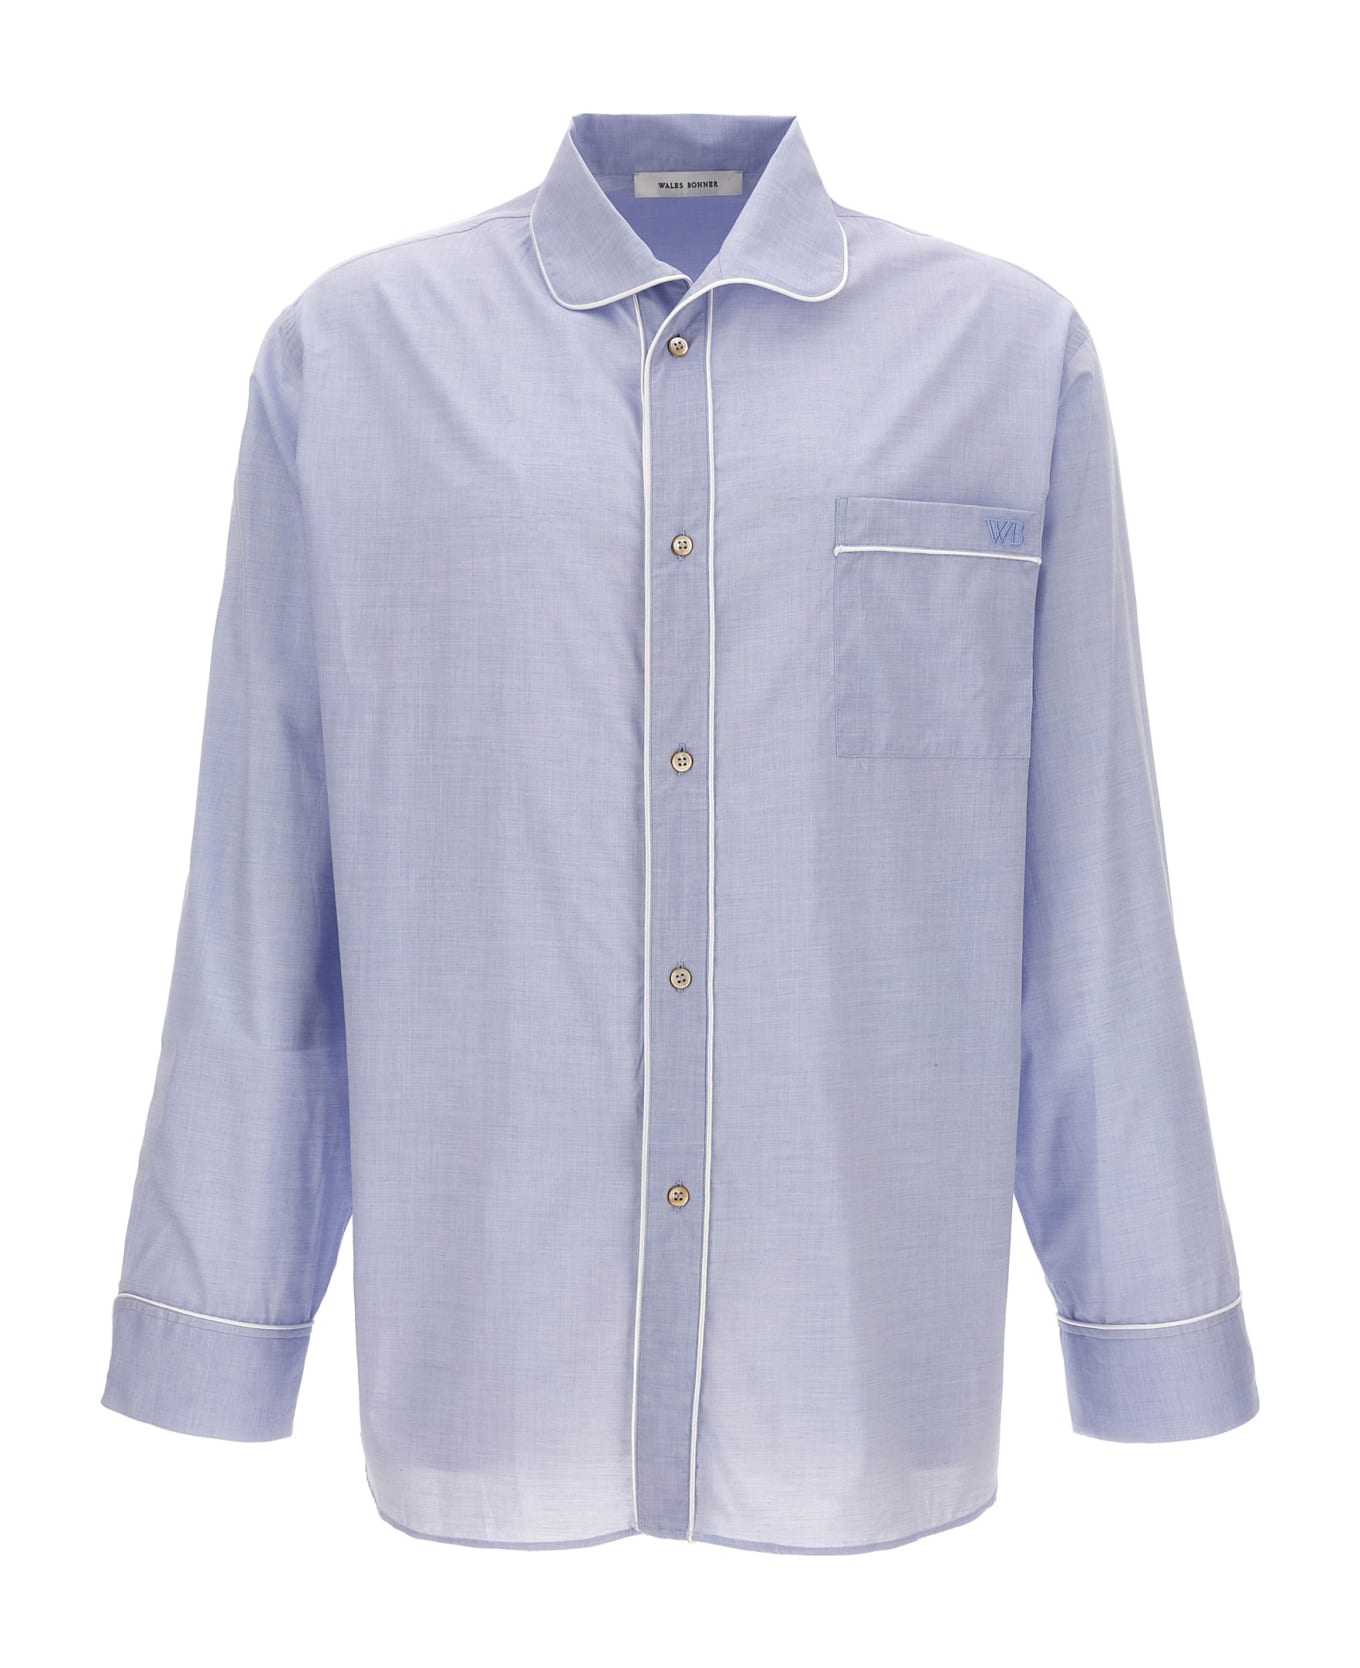 Wales Bonner 'market' Shirt - 500 LIGHT BLUE シャツ